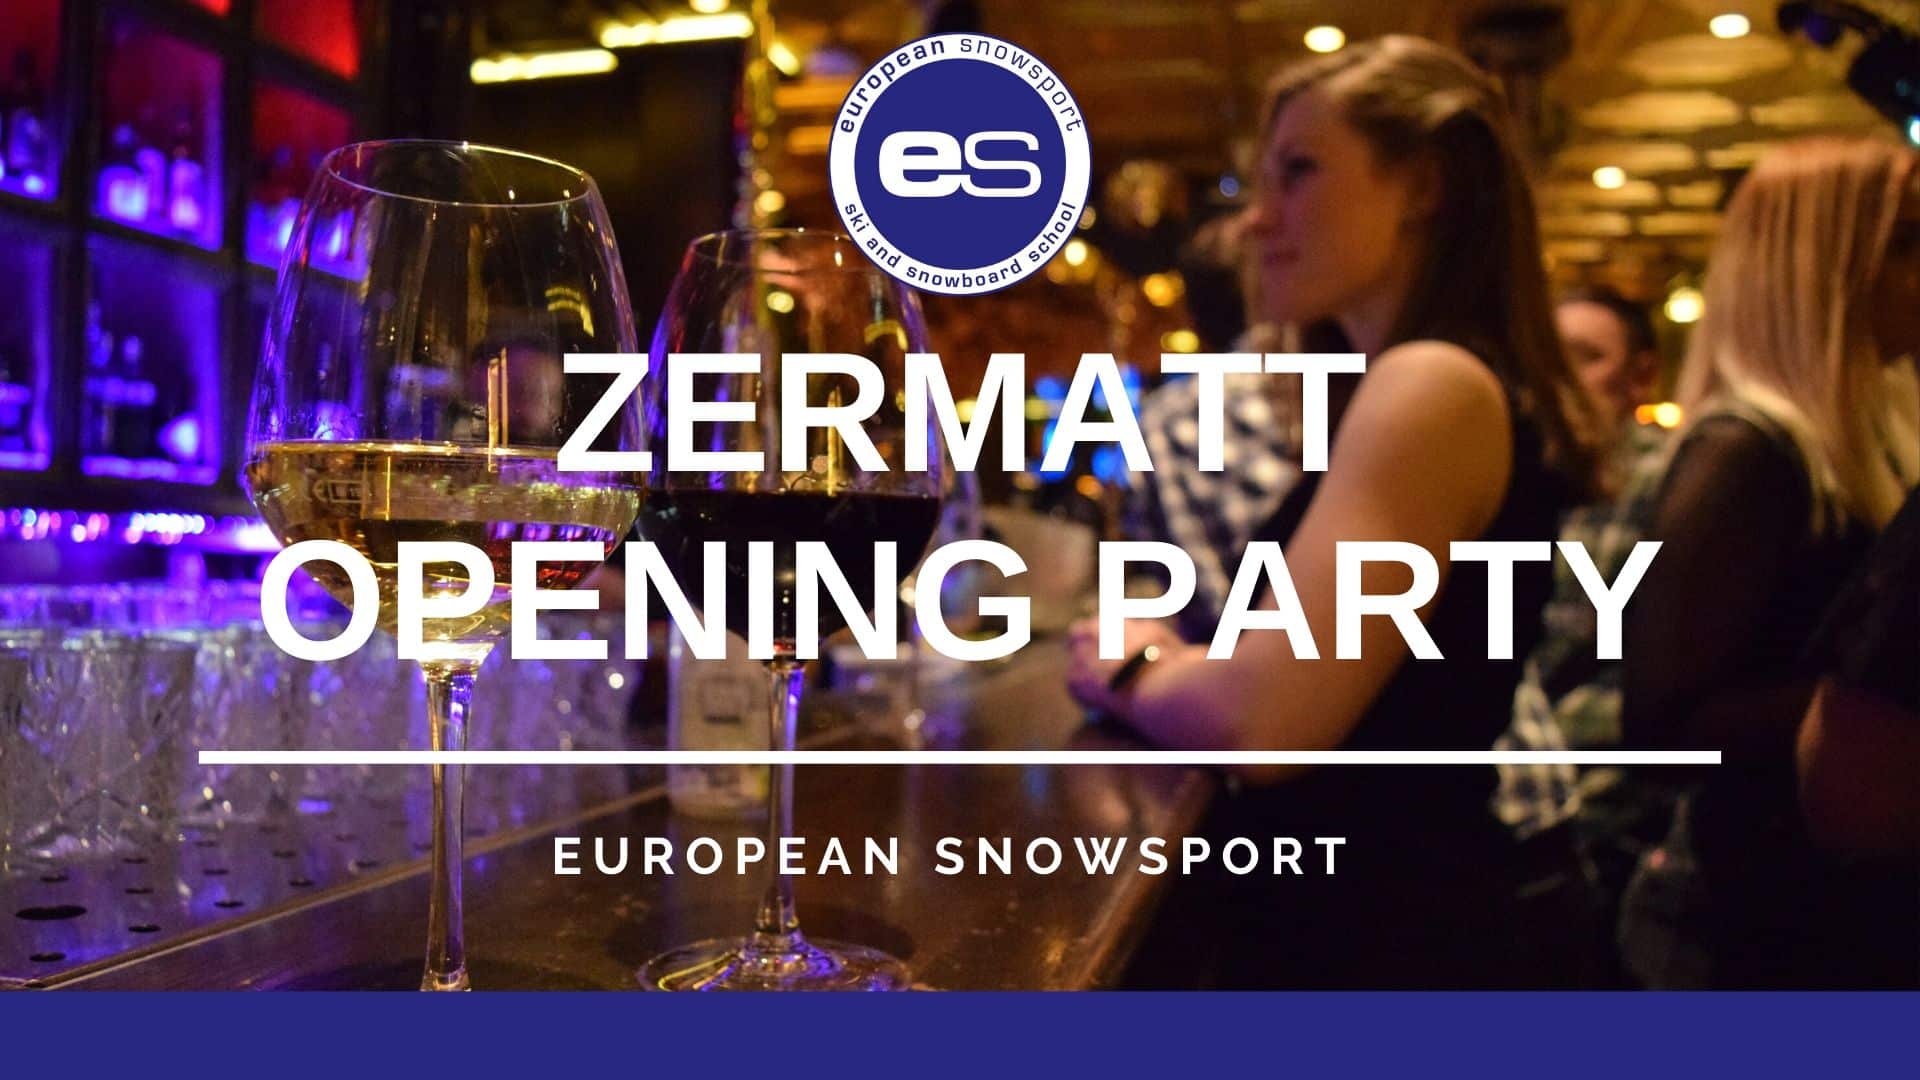 opening party zermatt